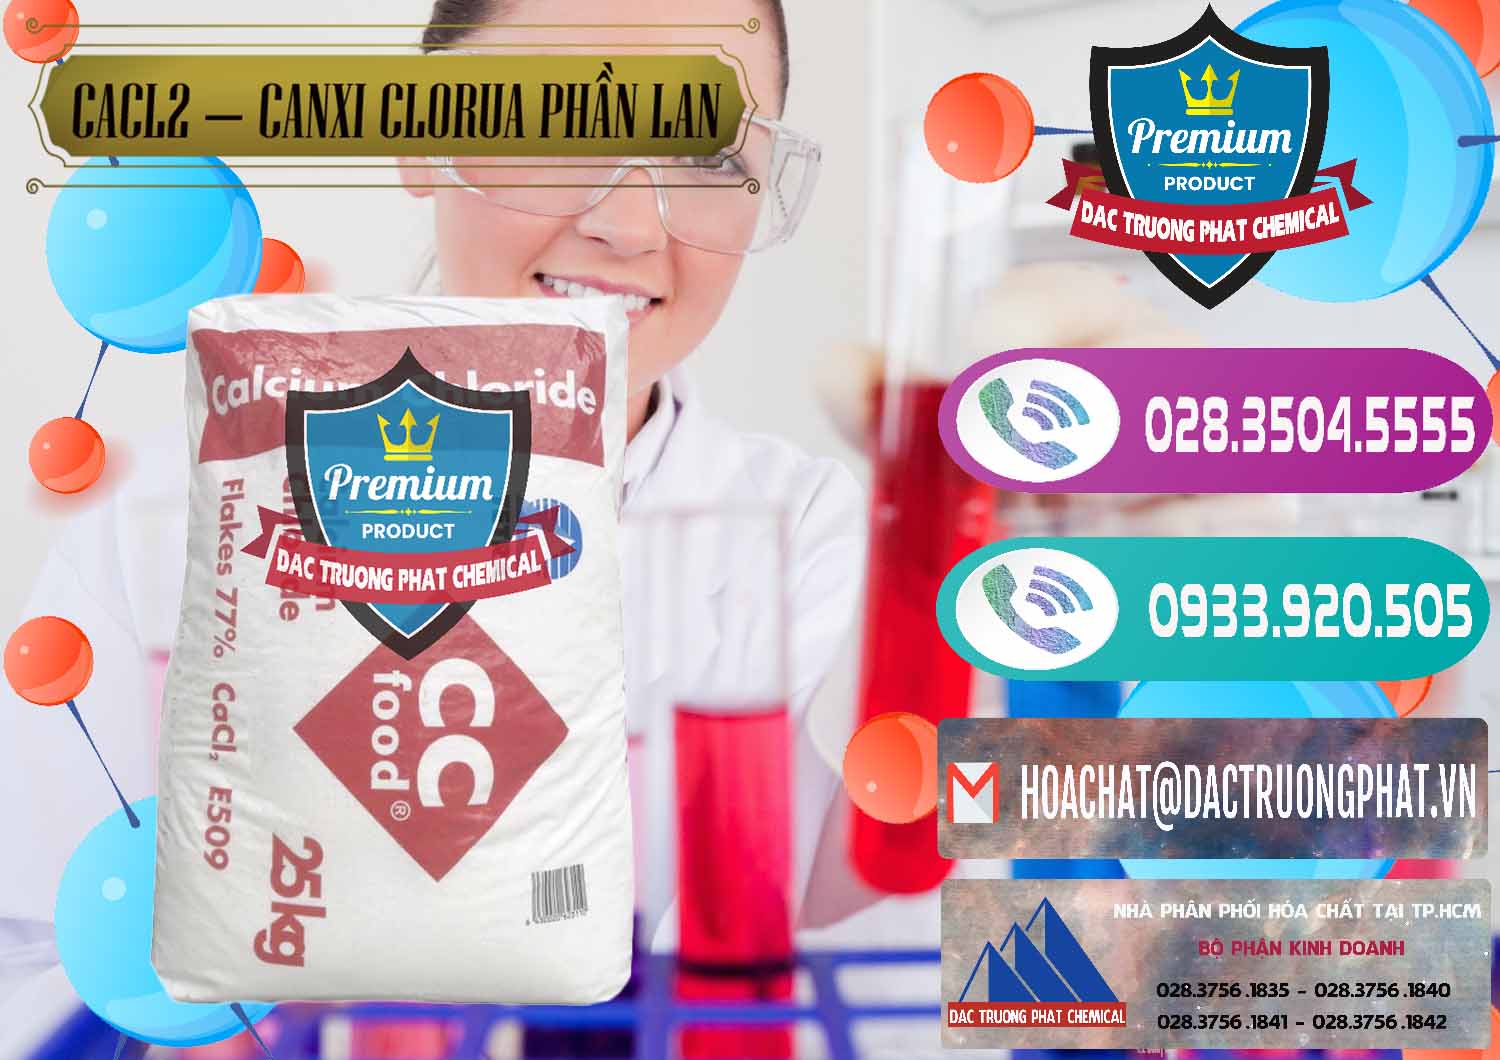 Cty chuyên bán - phân phối CaCl2 – Canxi Clorua Dạng Vảy 77% Tetra Phần Lan Finland - 0353 - Chuyên cung cấp và phân phối hóa chất tại TP.HCM - hoachatxulynuoc.com